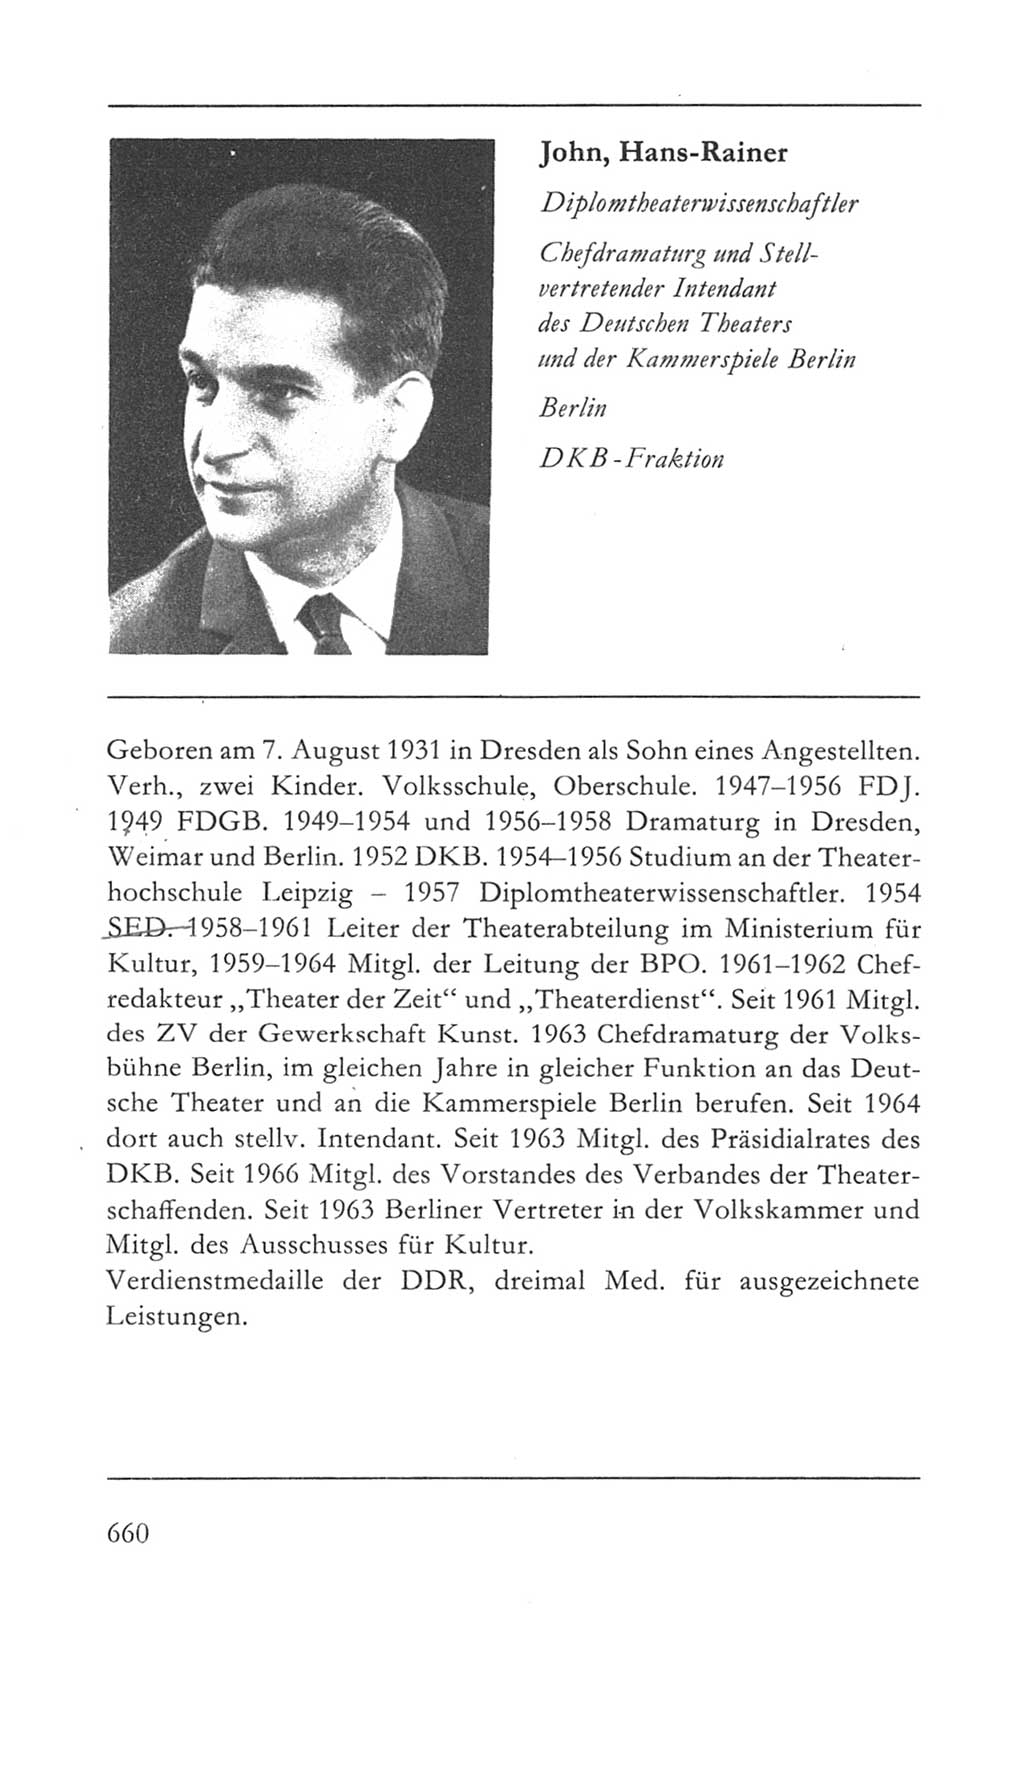 Volkskammer (VK) der Deutschen Demokratischen Republik (DDR) 5. Wahlperiode 1967-1971, Seite 660 (VK. DDR 5. WP. 1967-1971, S. 660)